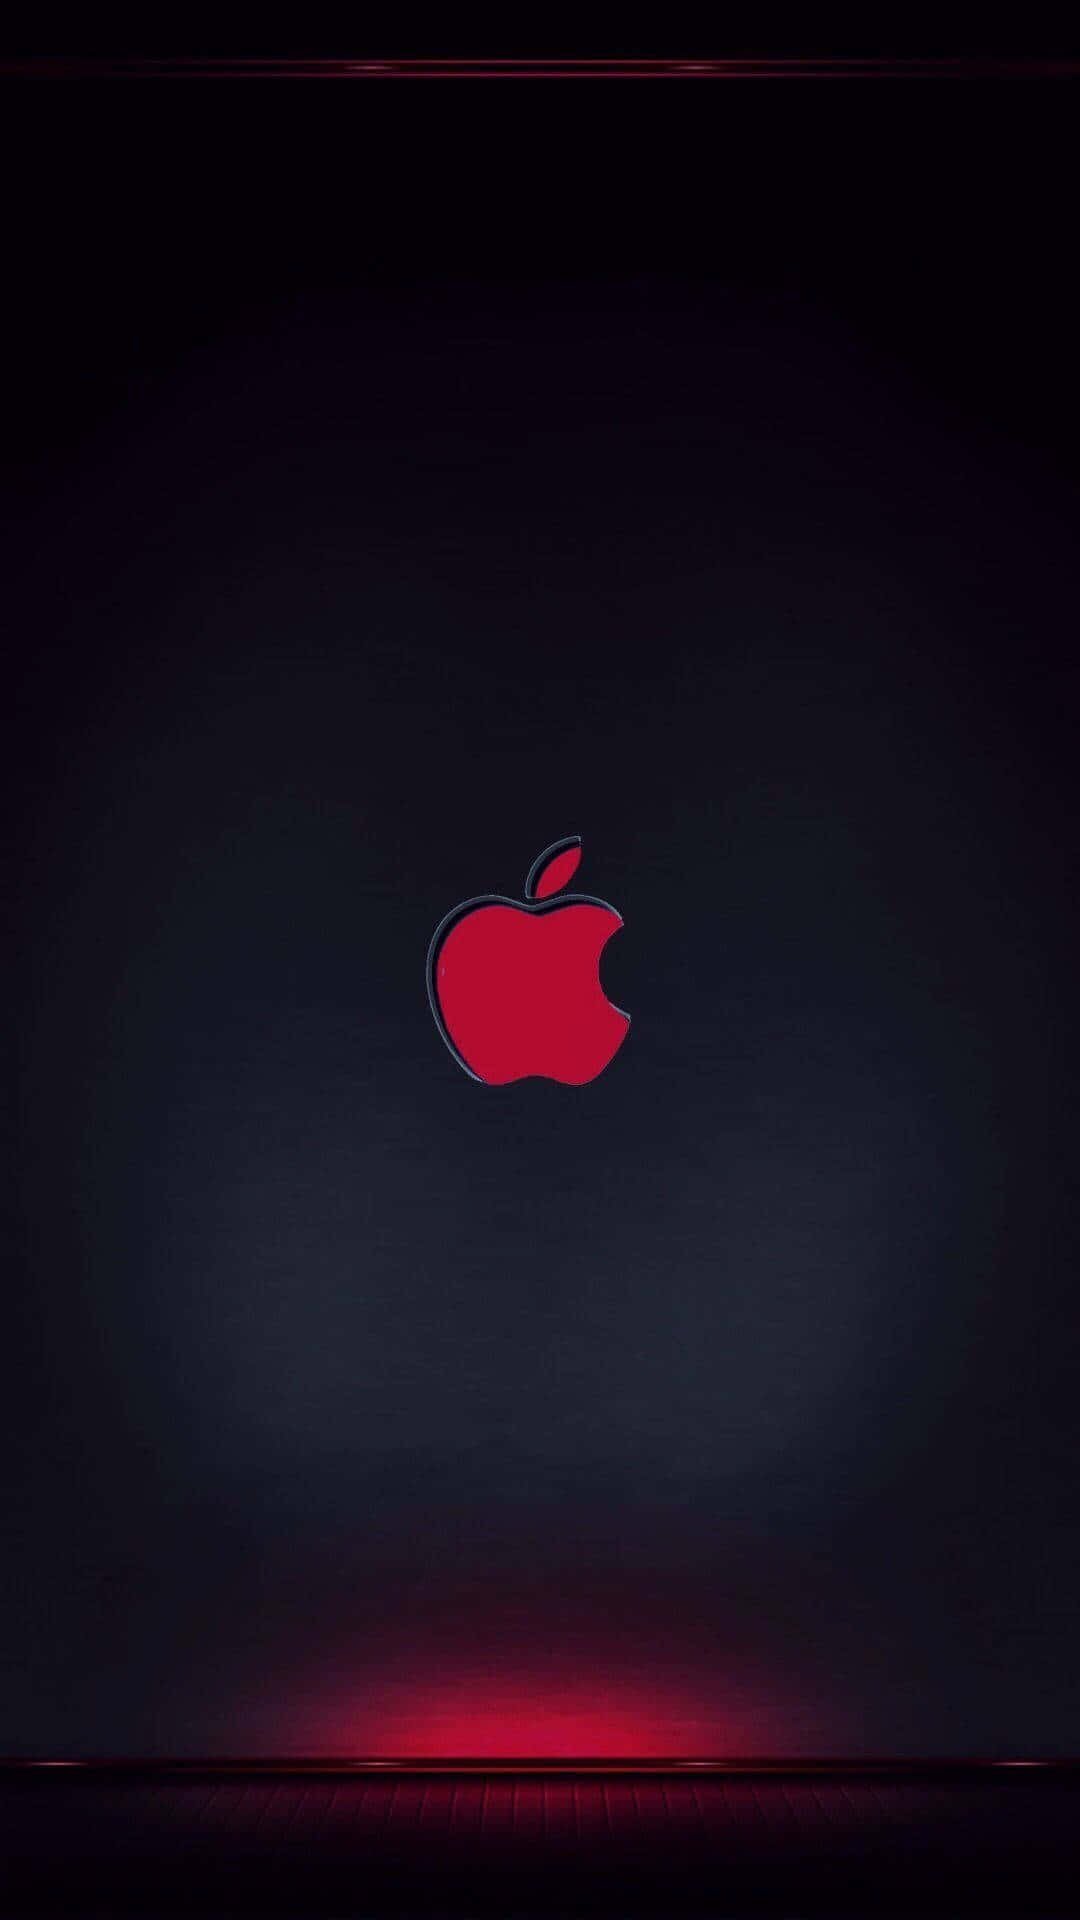 Dasikonische Apple-logo Auf Der Rückseite Des Neuen Iphone X. Wallpaper